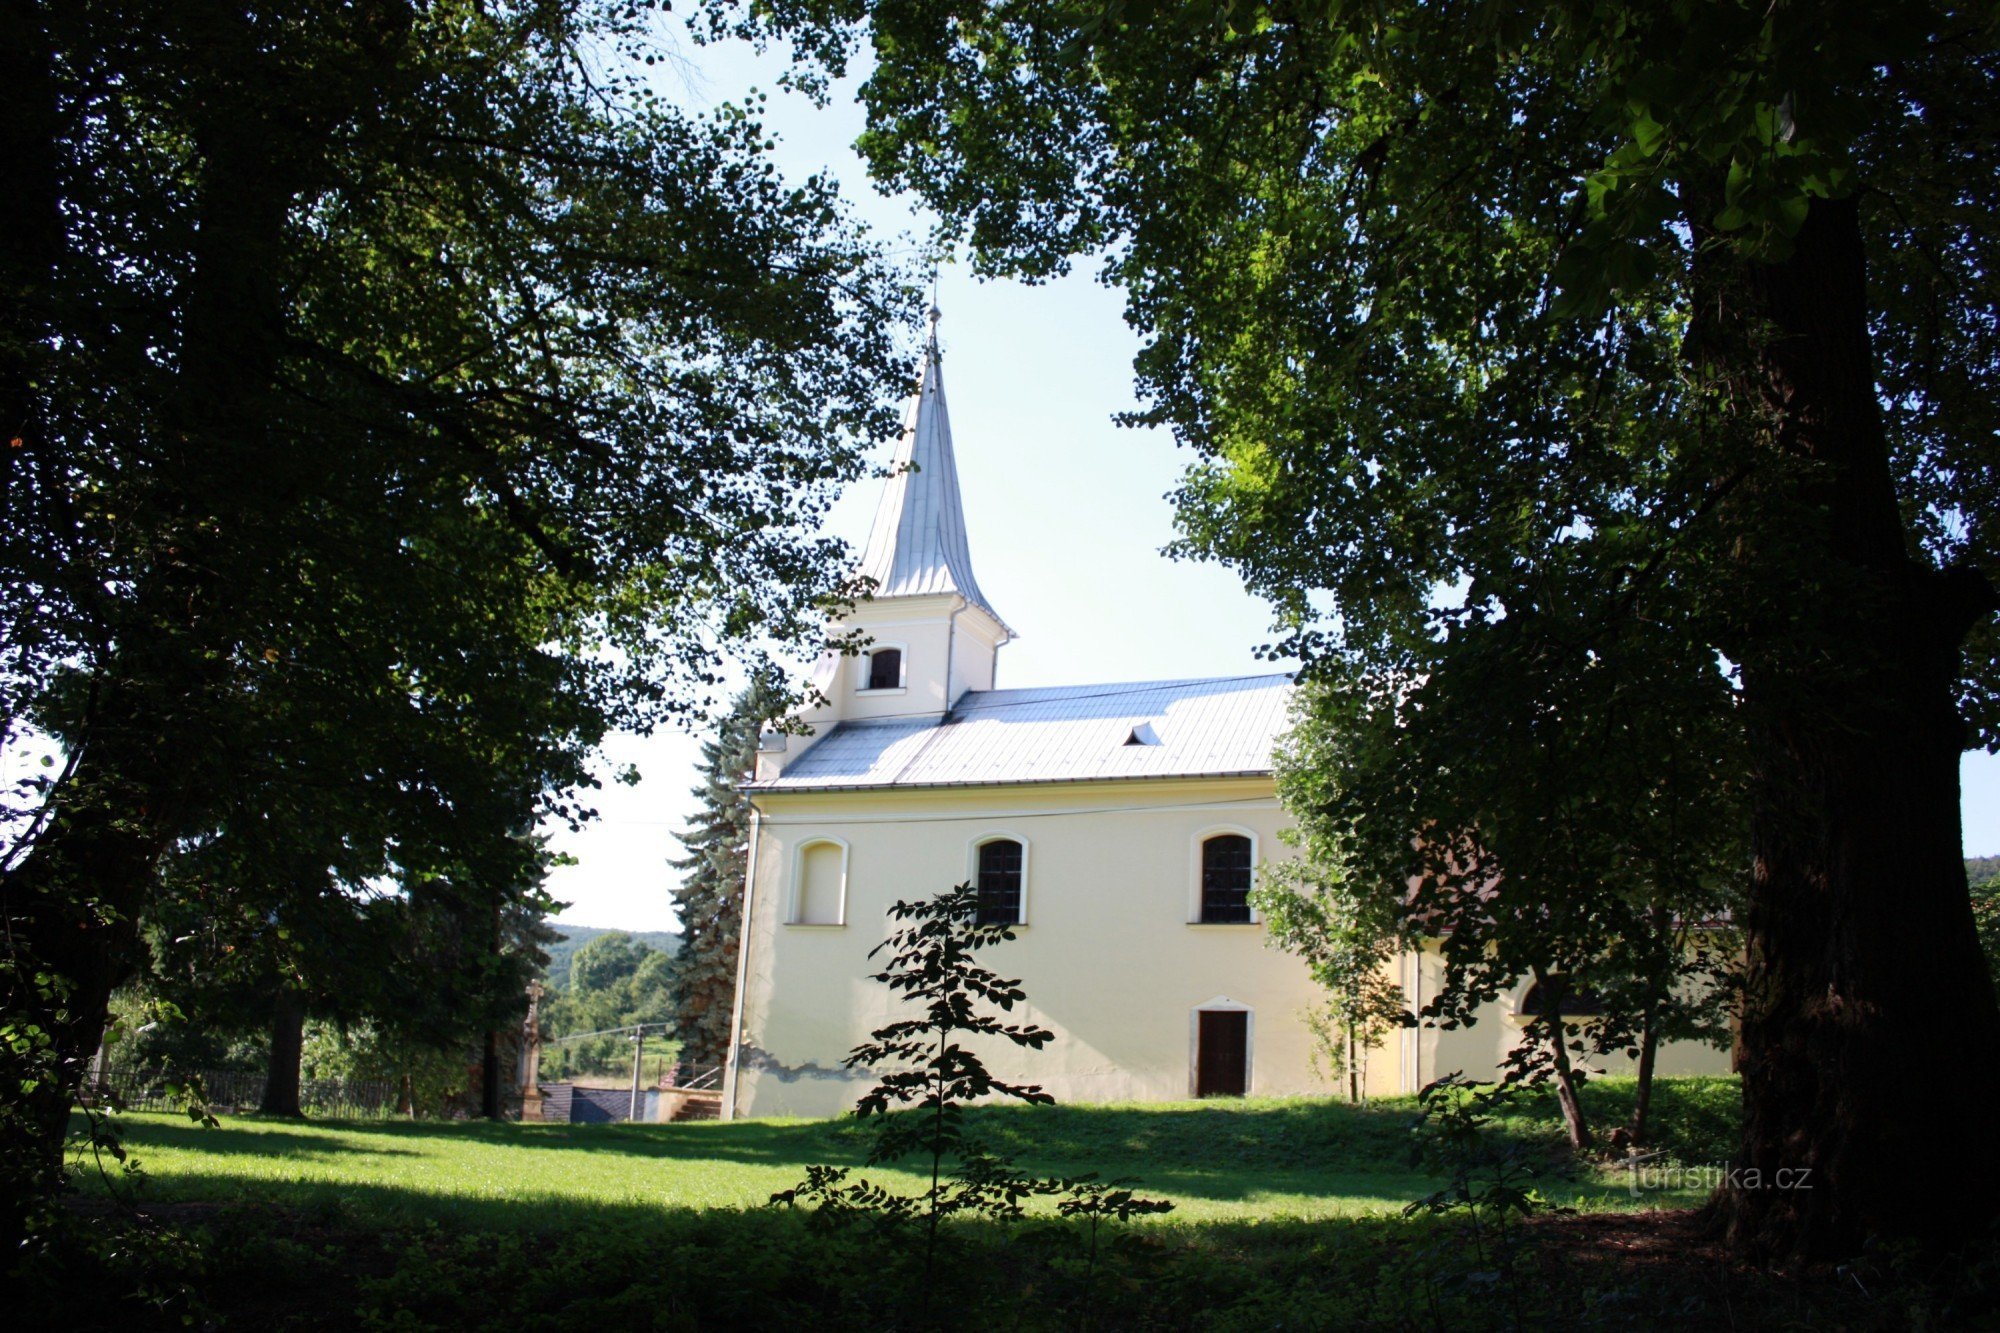 Nära slottet ligger kyrkan St. Lilja